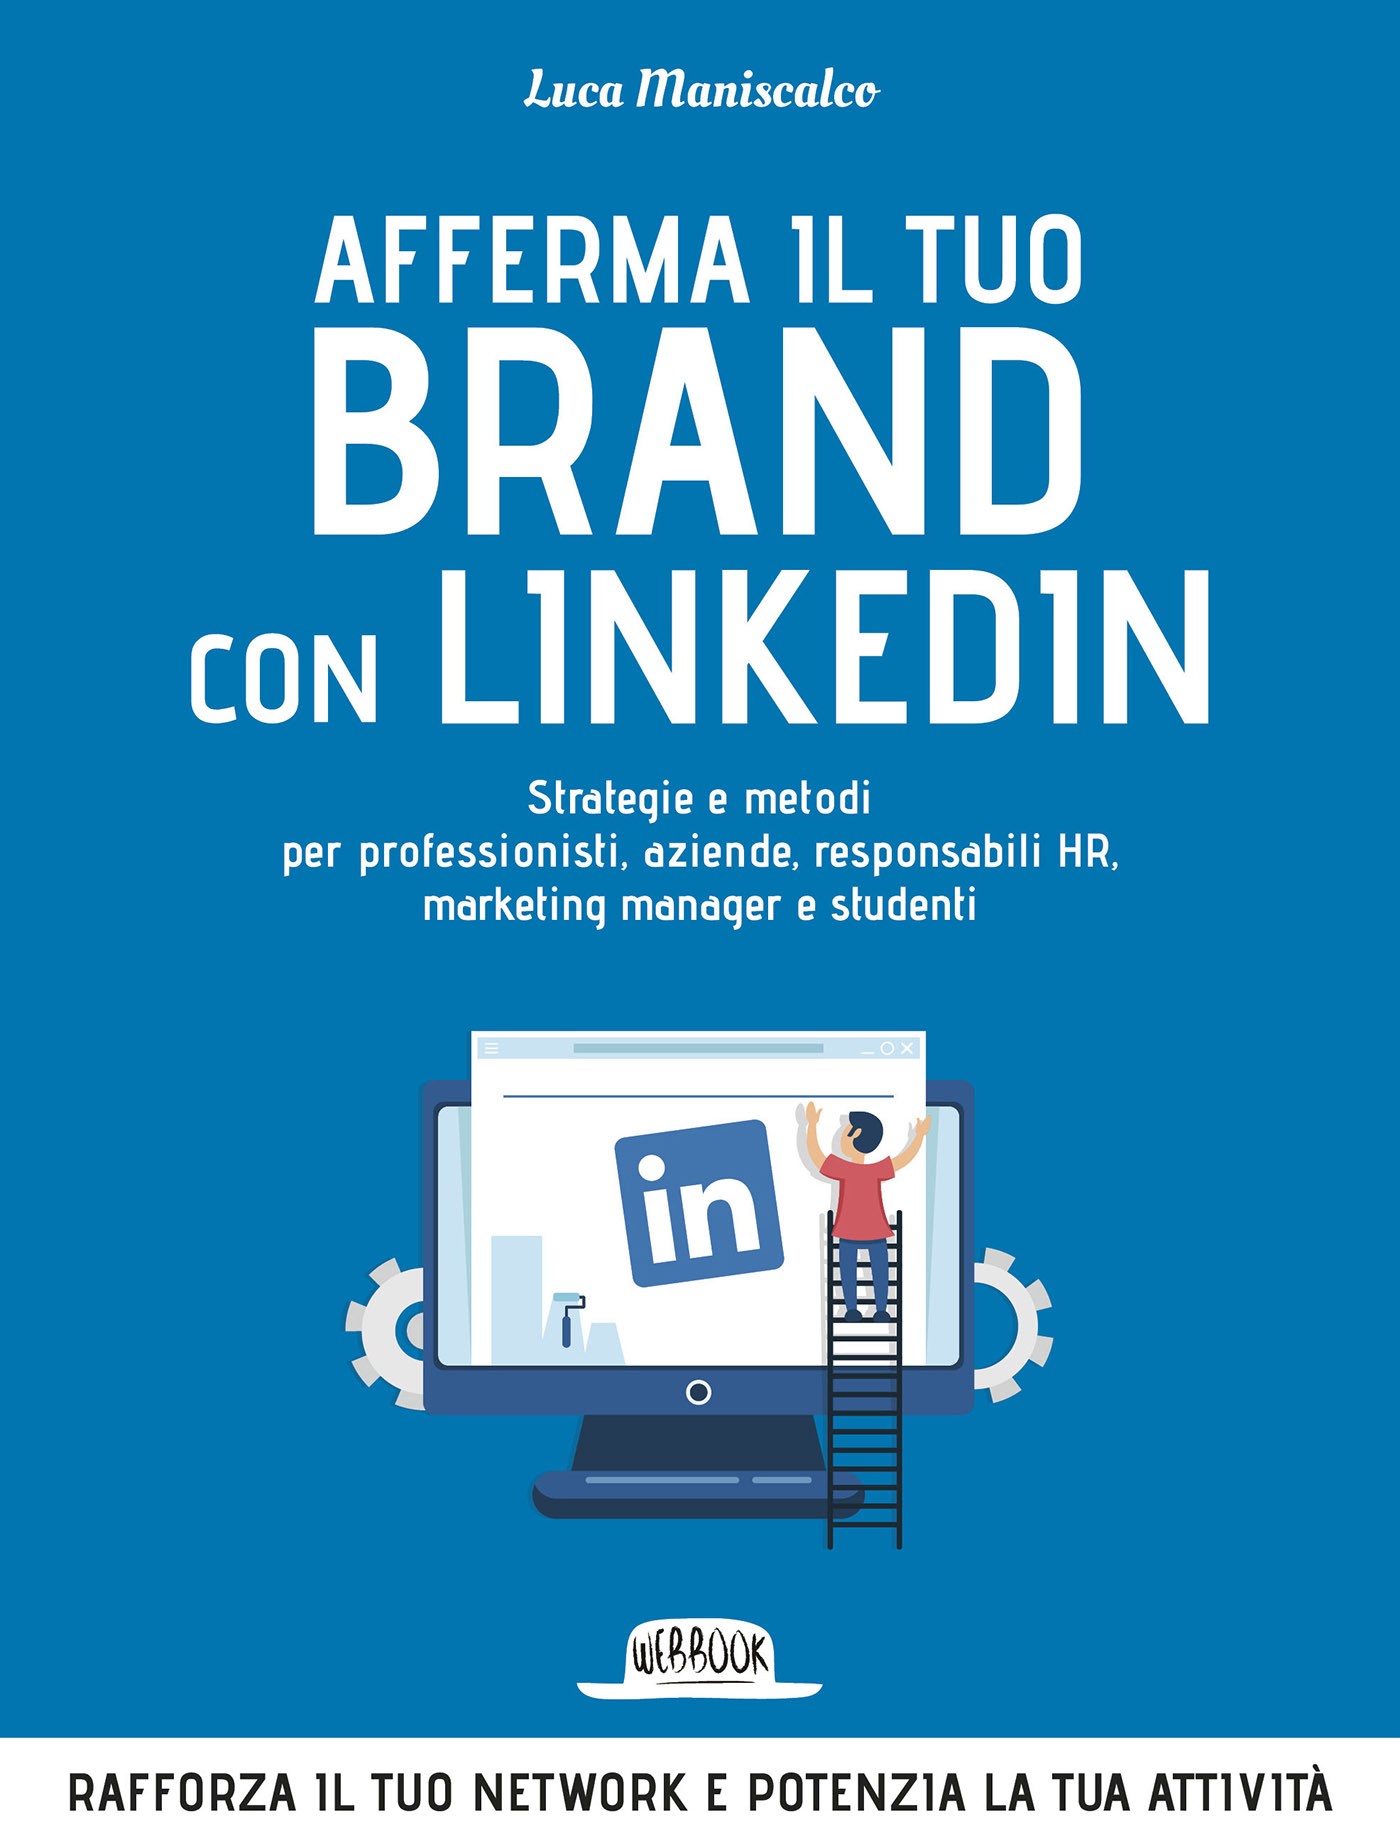 Afferma Il Tuo Brand con LinkedIn: Strategie e Metodi Per Professionisti, Aziende, Responsabili HR, Marketing Manager e Studenti - Librerie.coop